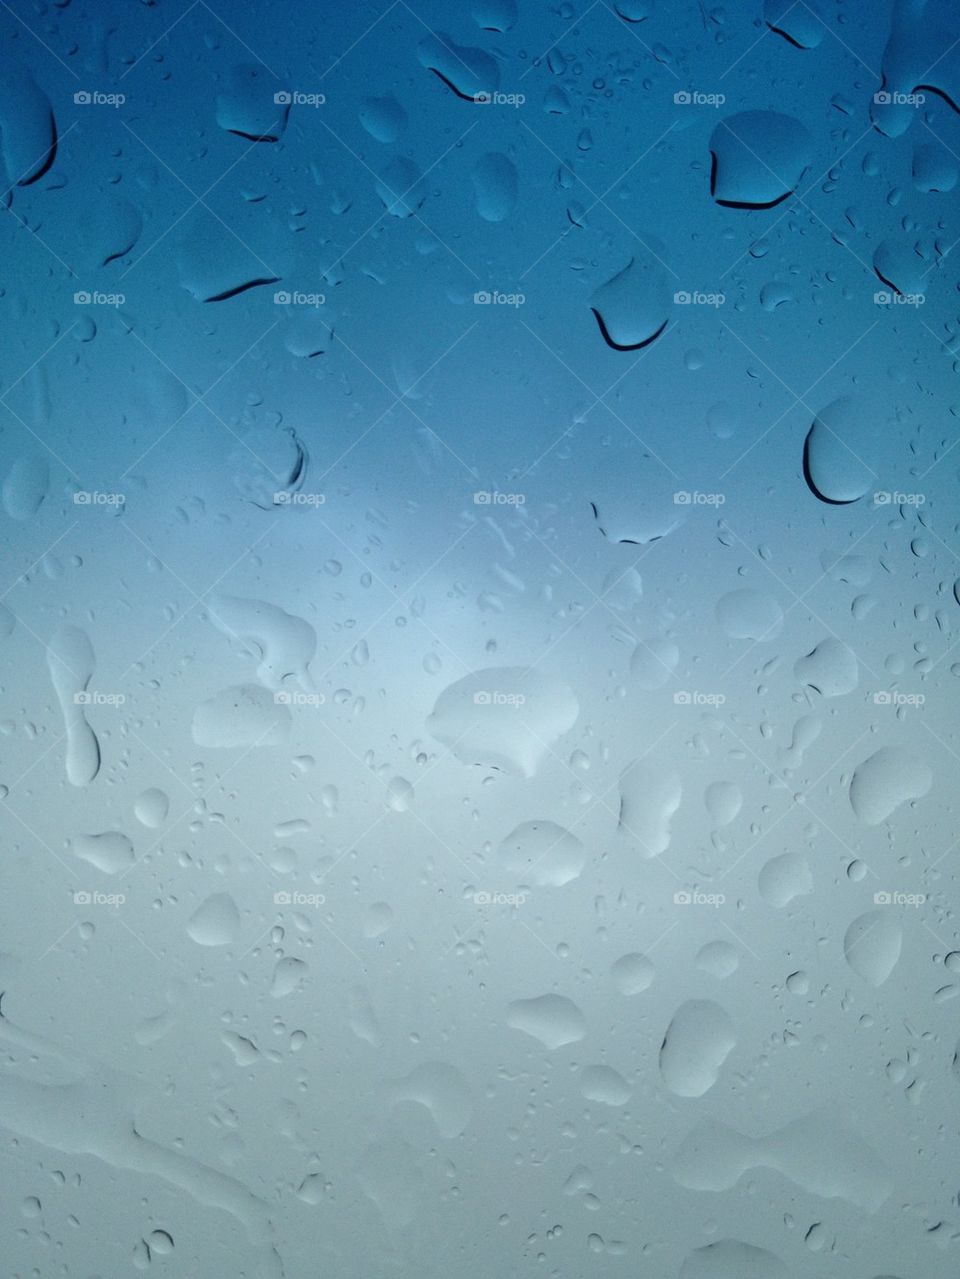 Water rain